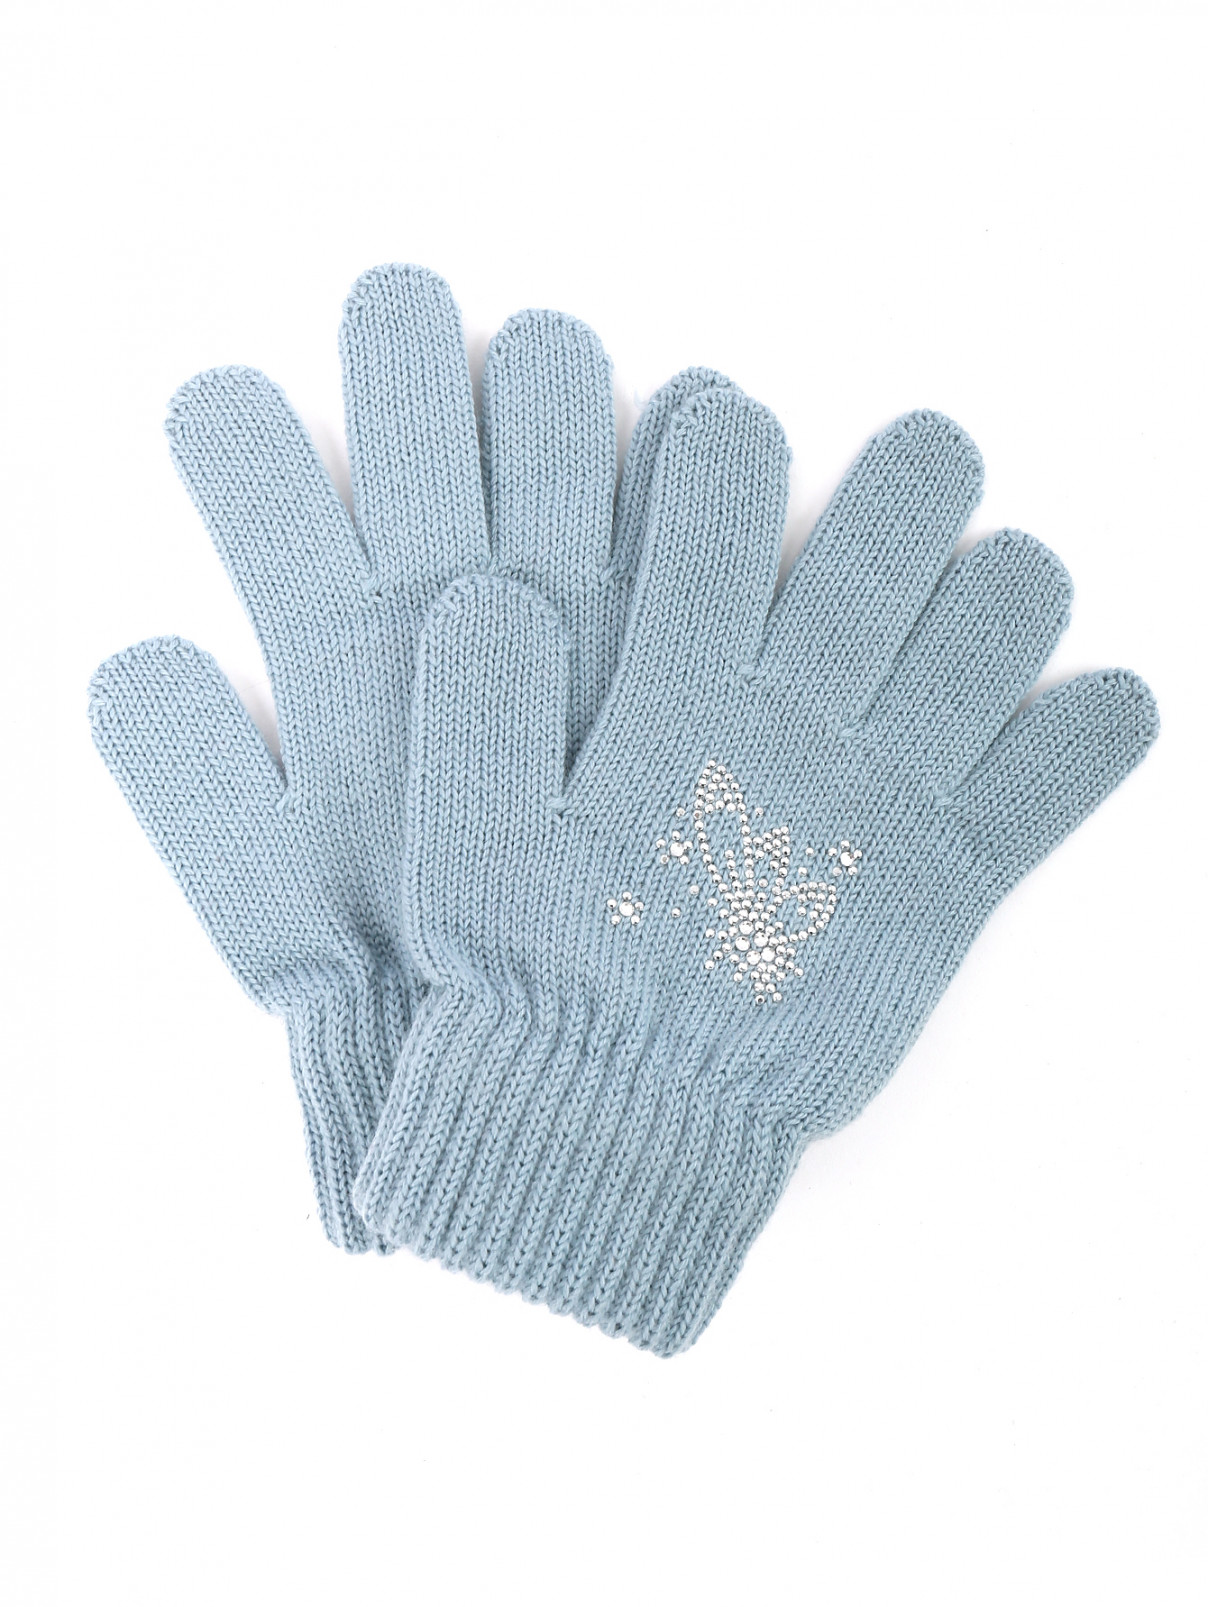 Трикотажные перчатки из шерсти со стразами Catya  –  Общий вид  – Цвет:  Синий